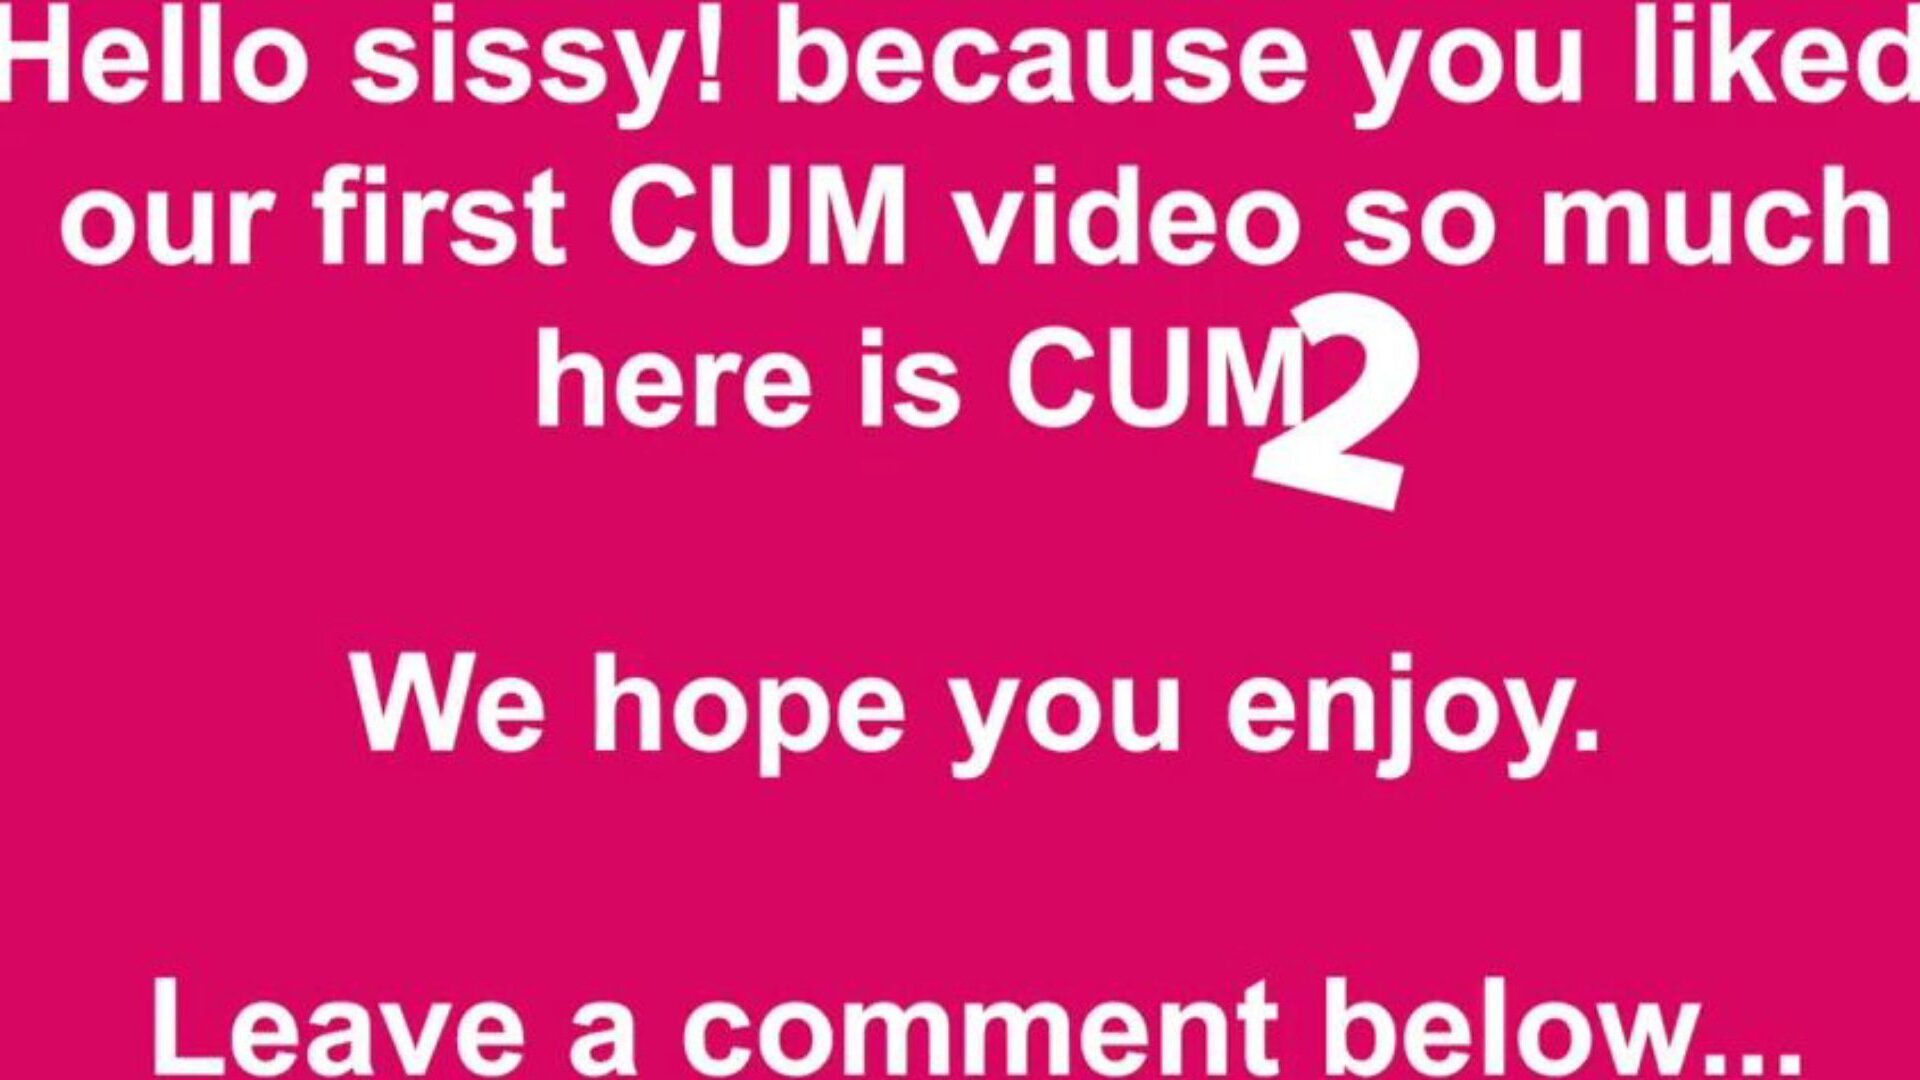 cum two free cum & cumming tube porn video 49 - xhamster ρολόι cum two tube fuck-a-thon βίντεο δωρεάν στο xhamster, με την απεριόριστη συλλογή δωρεάν cum cumming tube & tube 2 hd porn επεισόδια ταινιών